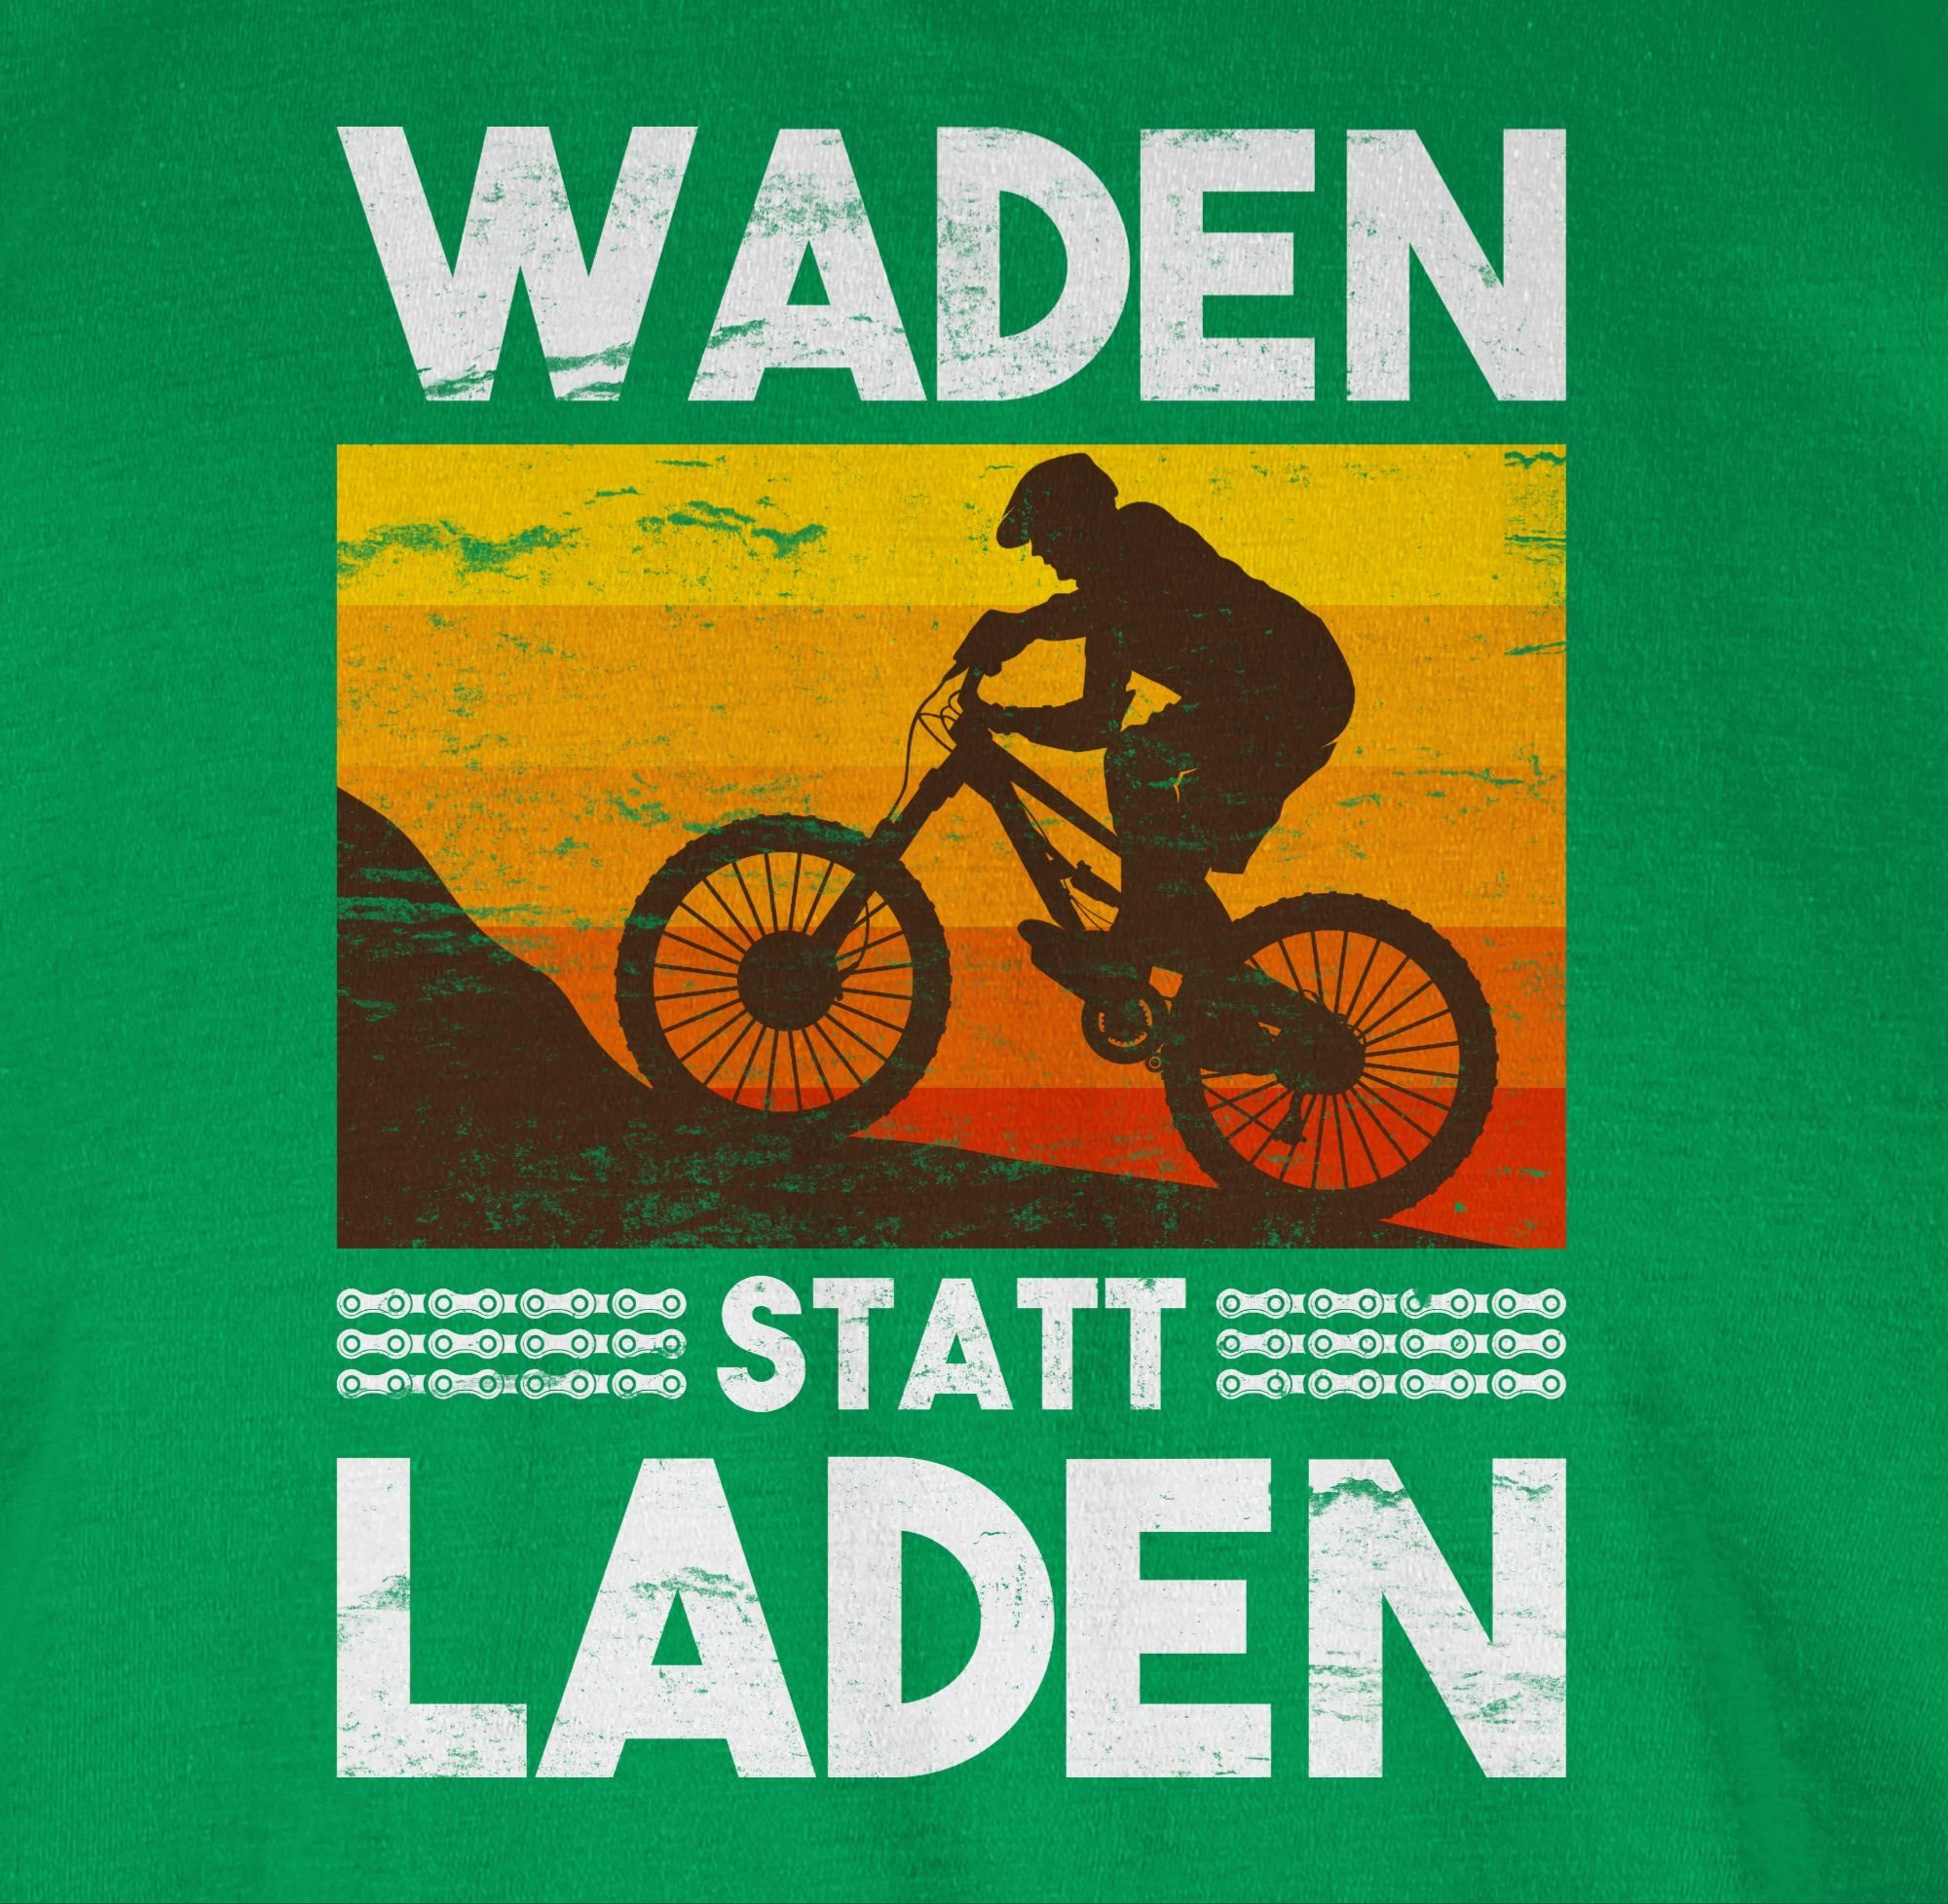 Radsport Shirtracer Grün Waden statt Bekleidung weiß T-Shirt 03 Vintage Laden Fahrrad